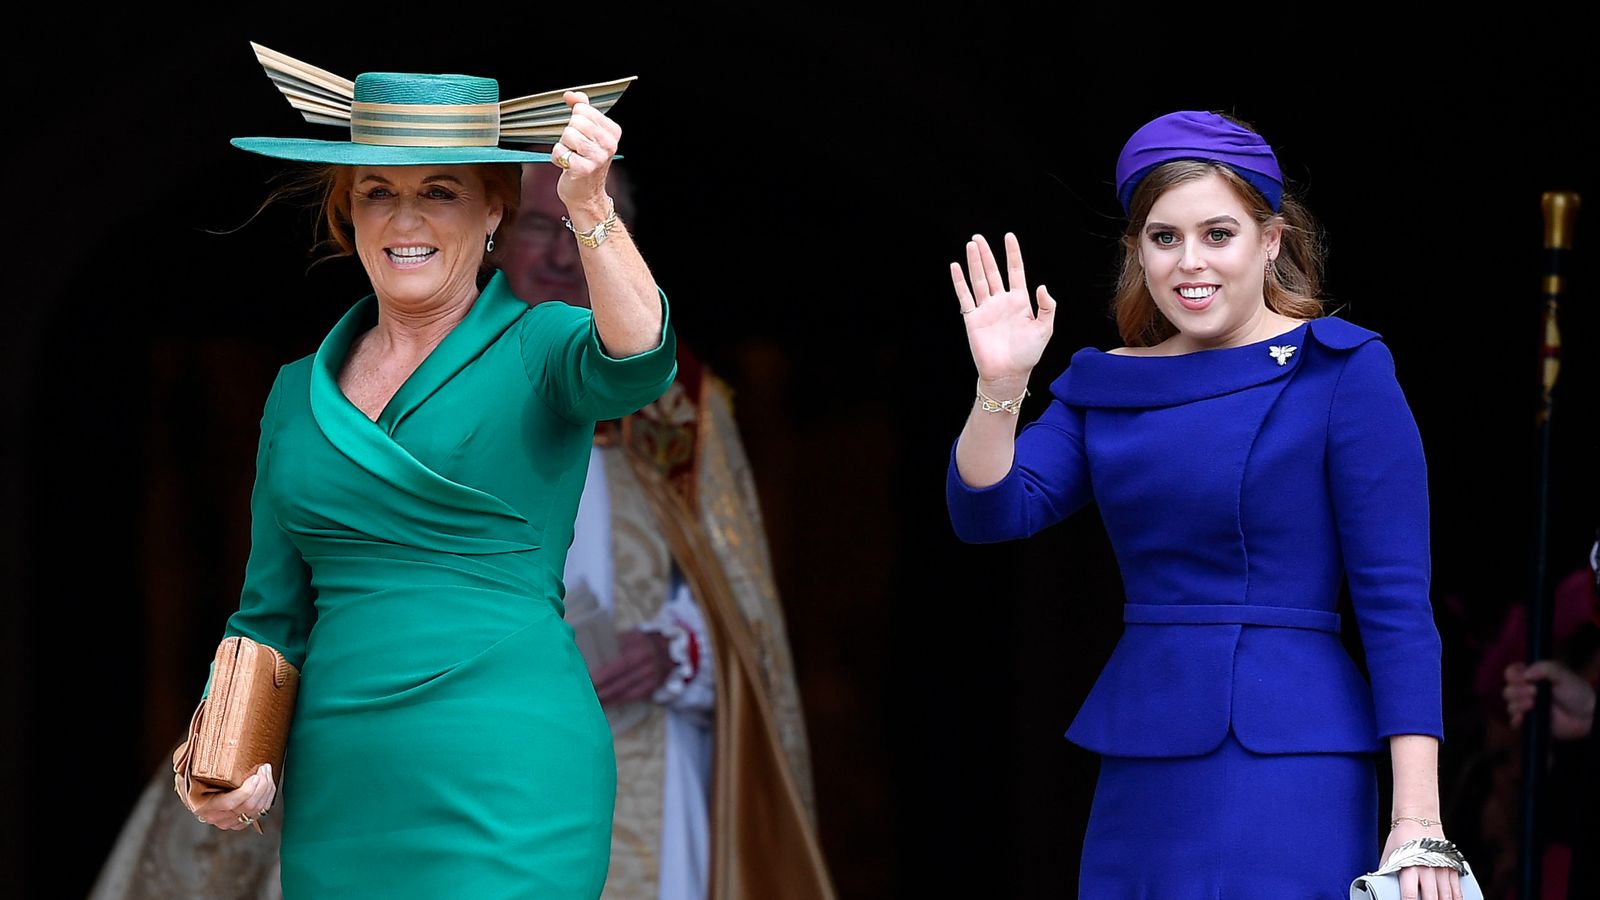 Сара Фъргюсън: Херцогинята на Йорк „се справя добре“ след двоен страх от рак, казва принцеса Беатрис